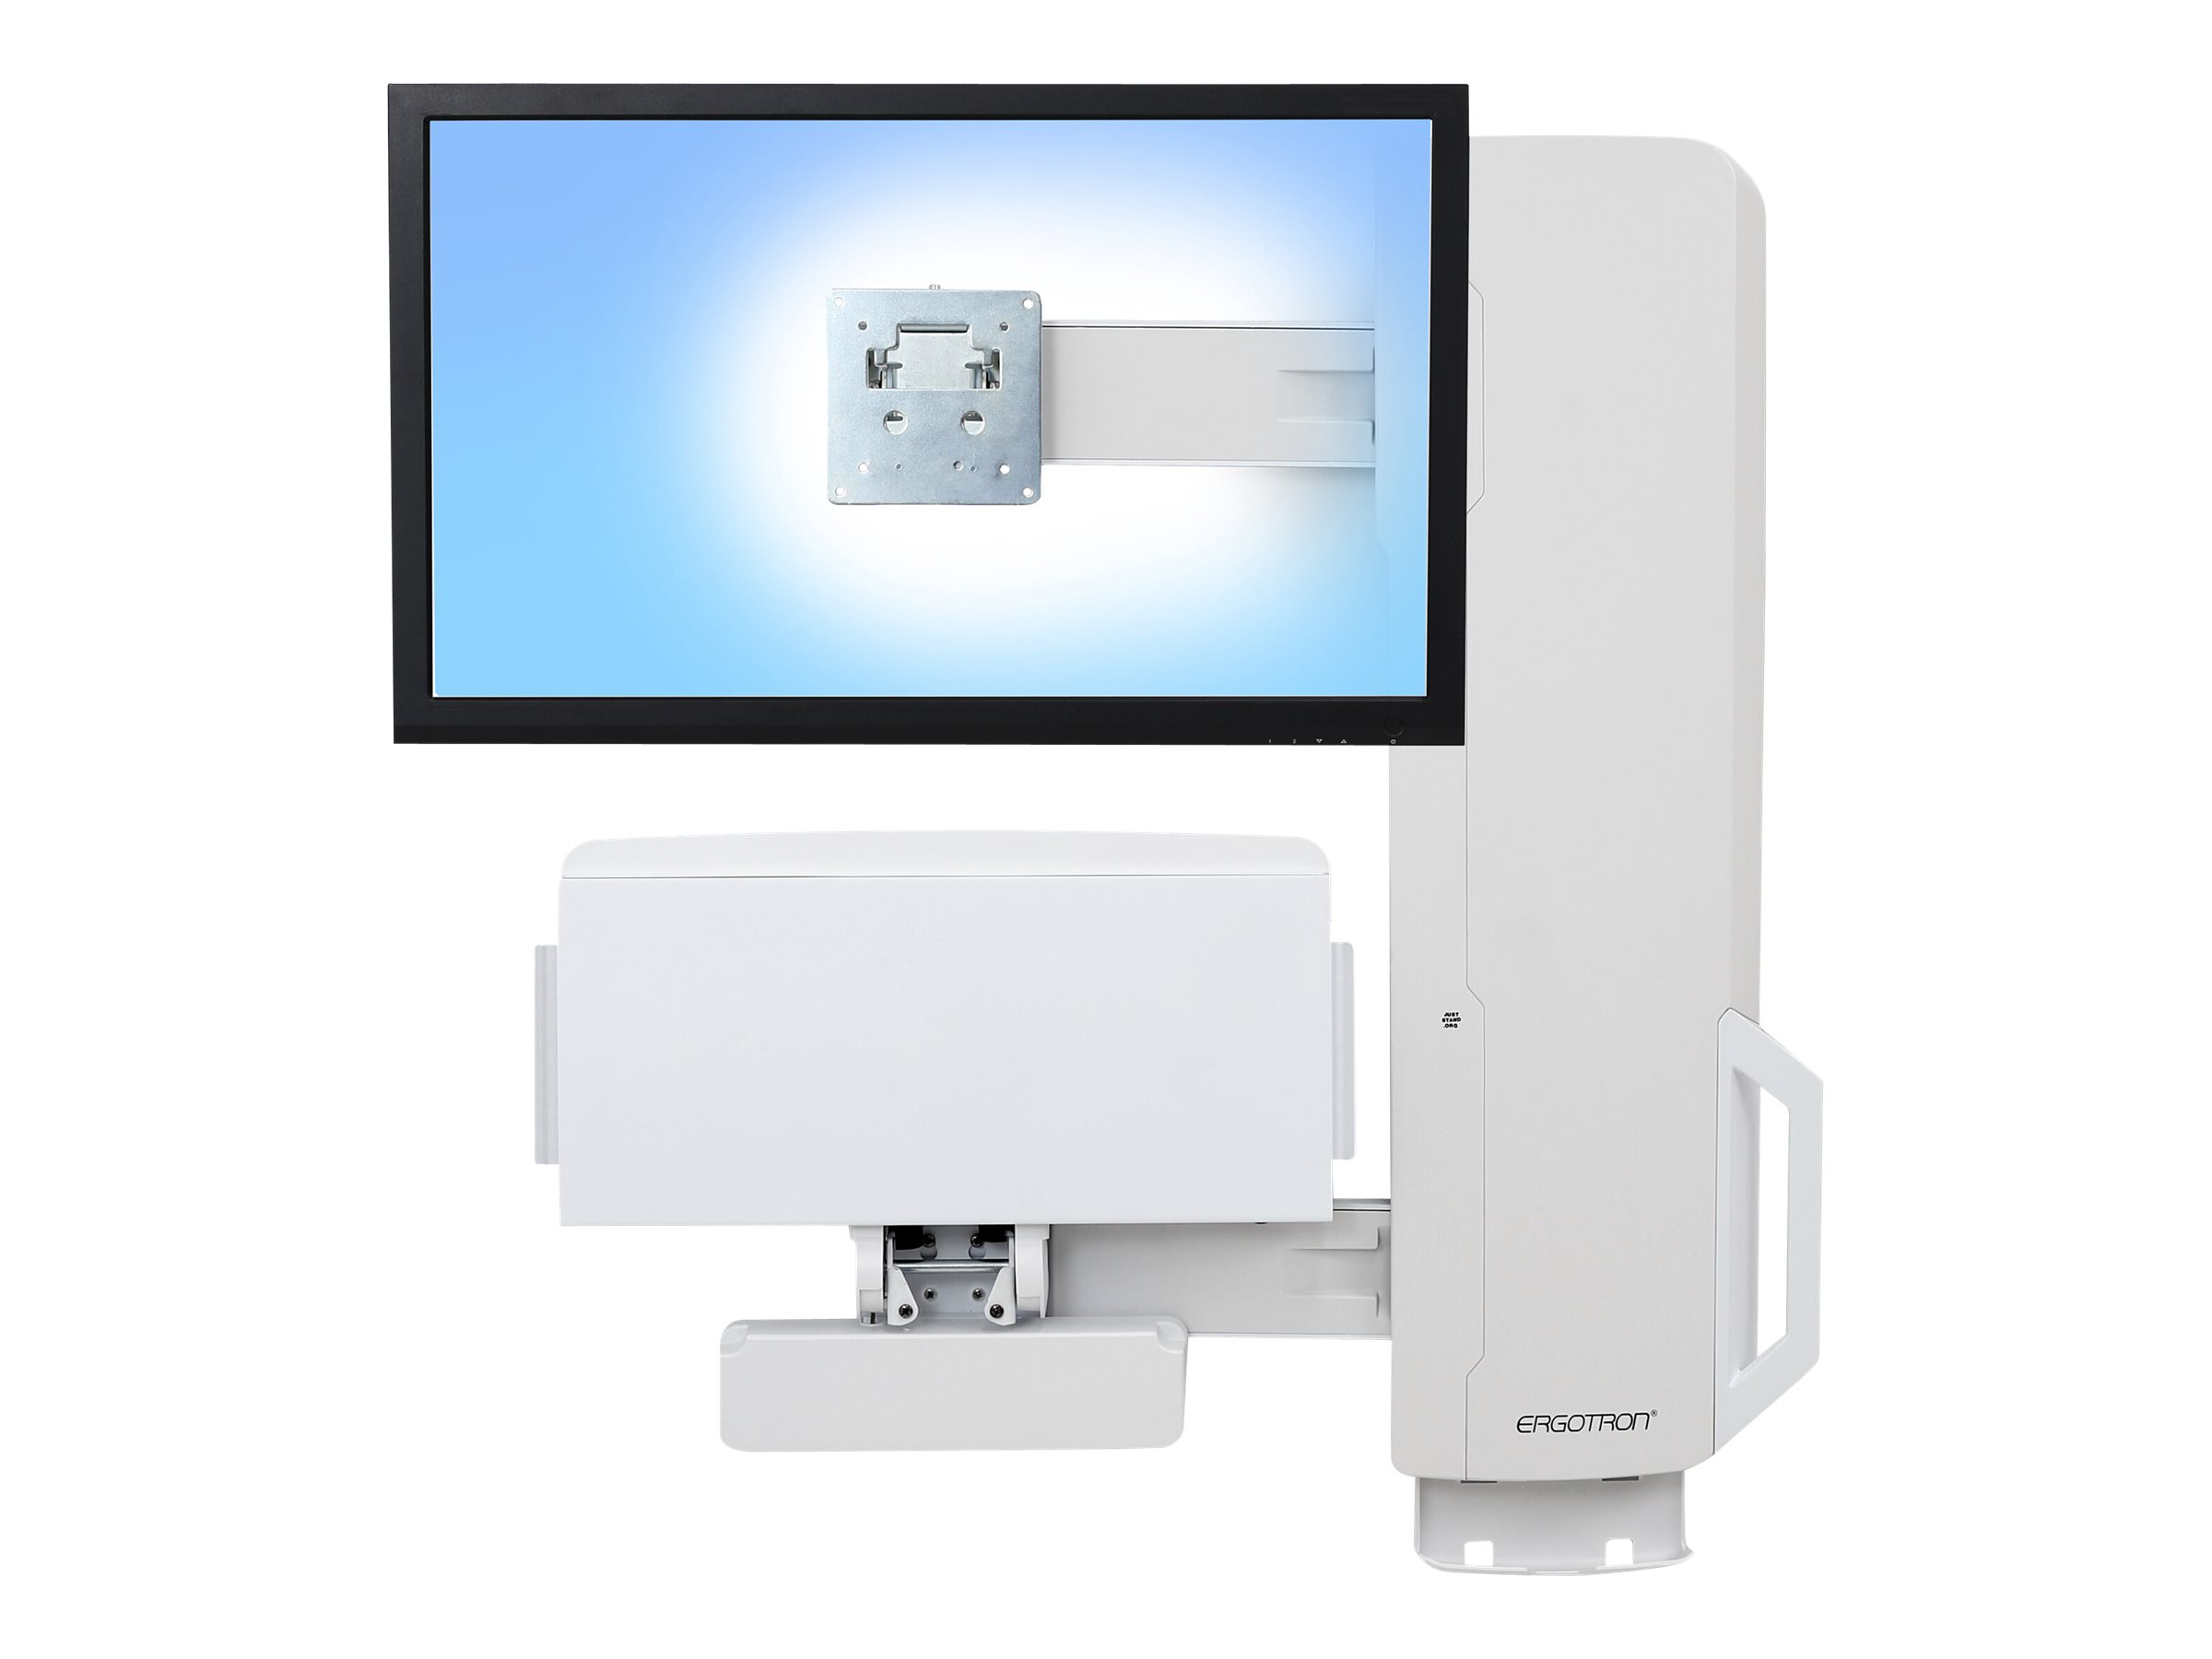 Ergotron - Kit de montage (levage vertical) - pour écran LCD/équipement PC - système assis-debout - blanc - Taille d'écran : jusqu'à 24 pouces - montable sur mur - 61-081-062 - Accessoires pour écran